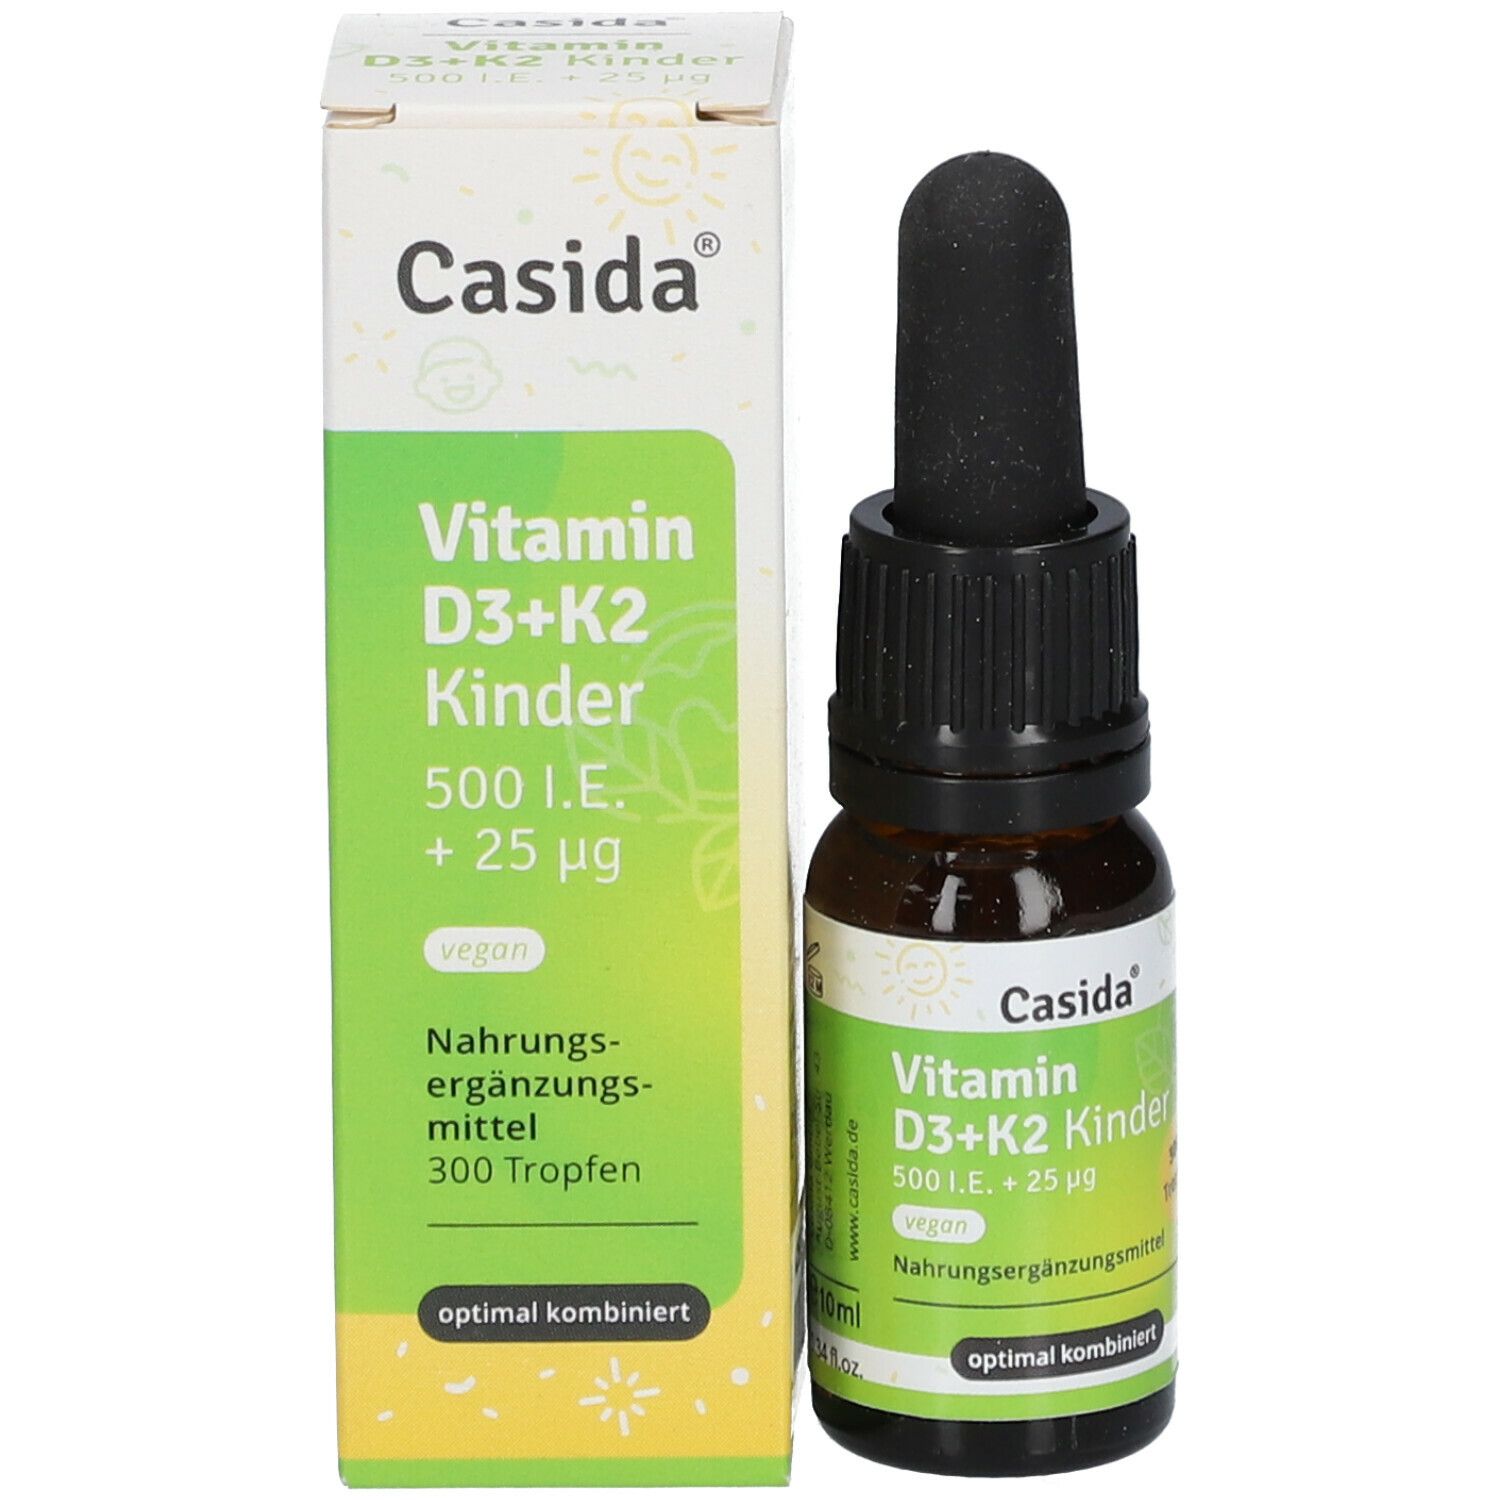 Casida® Vitamin D3 + K2 Kinder vegan